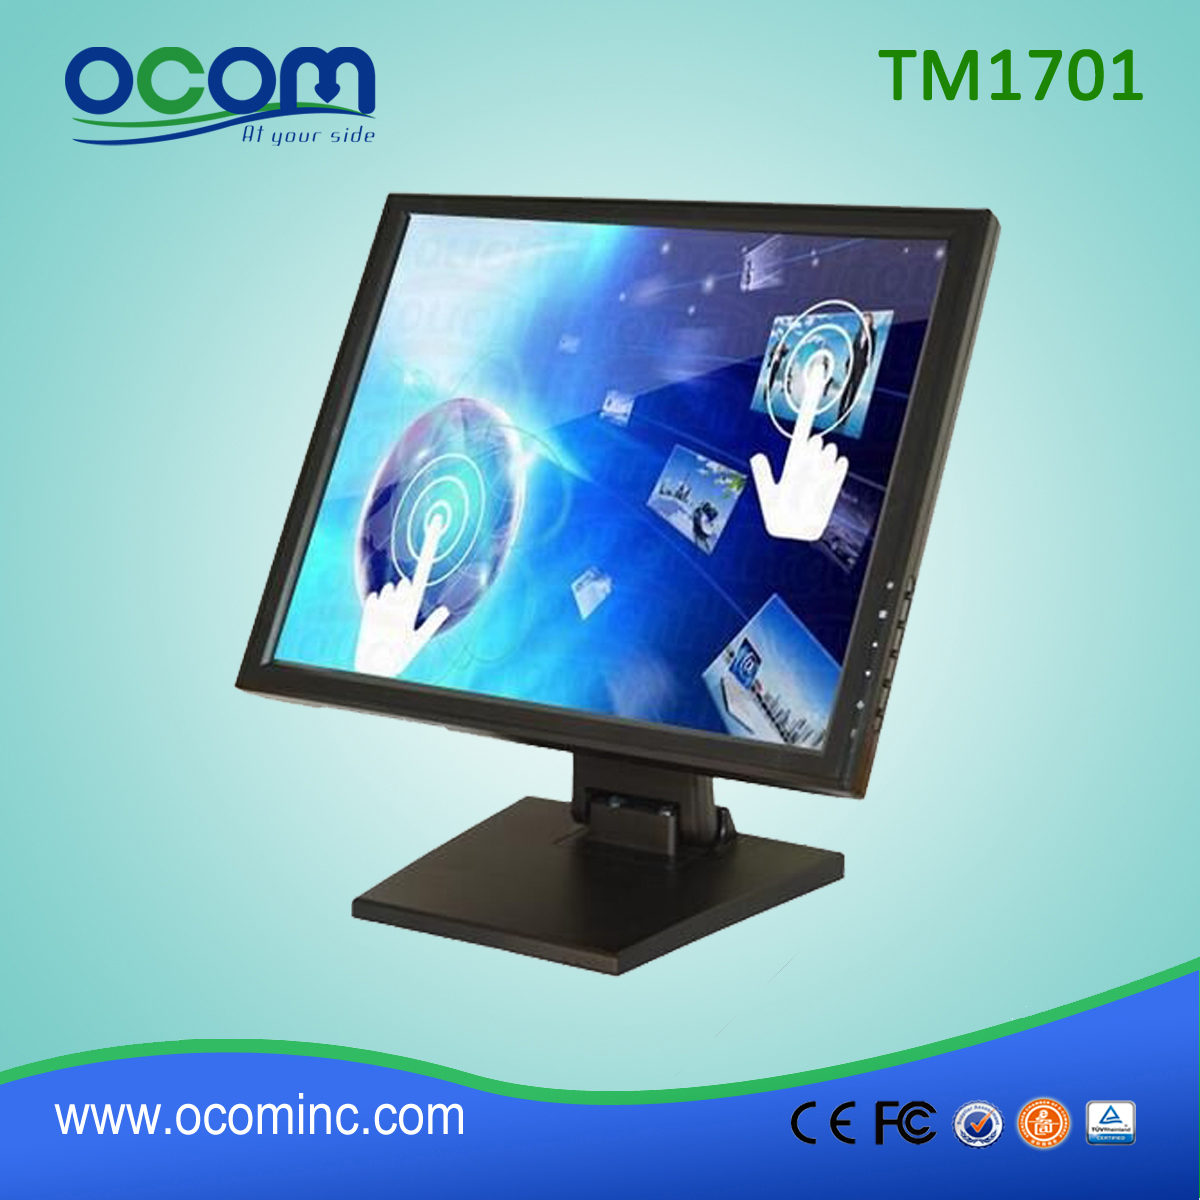 TM1701 17 inch LCD-aanraakscherm met ingebouwde voet